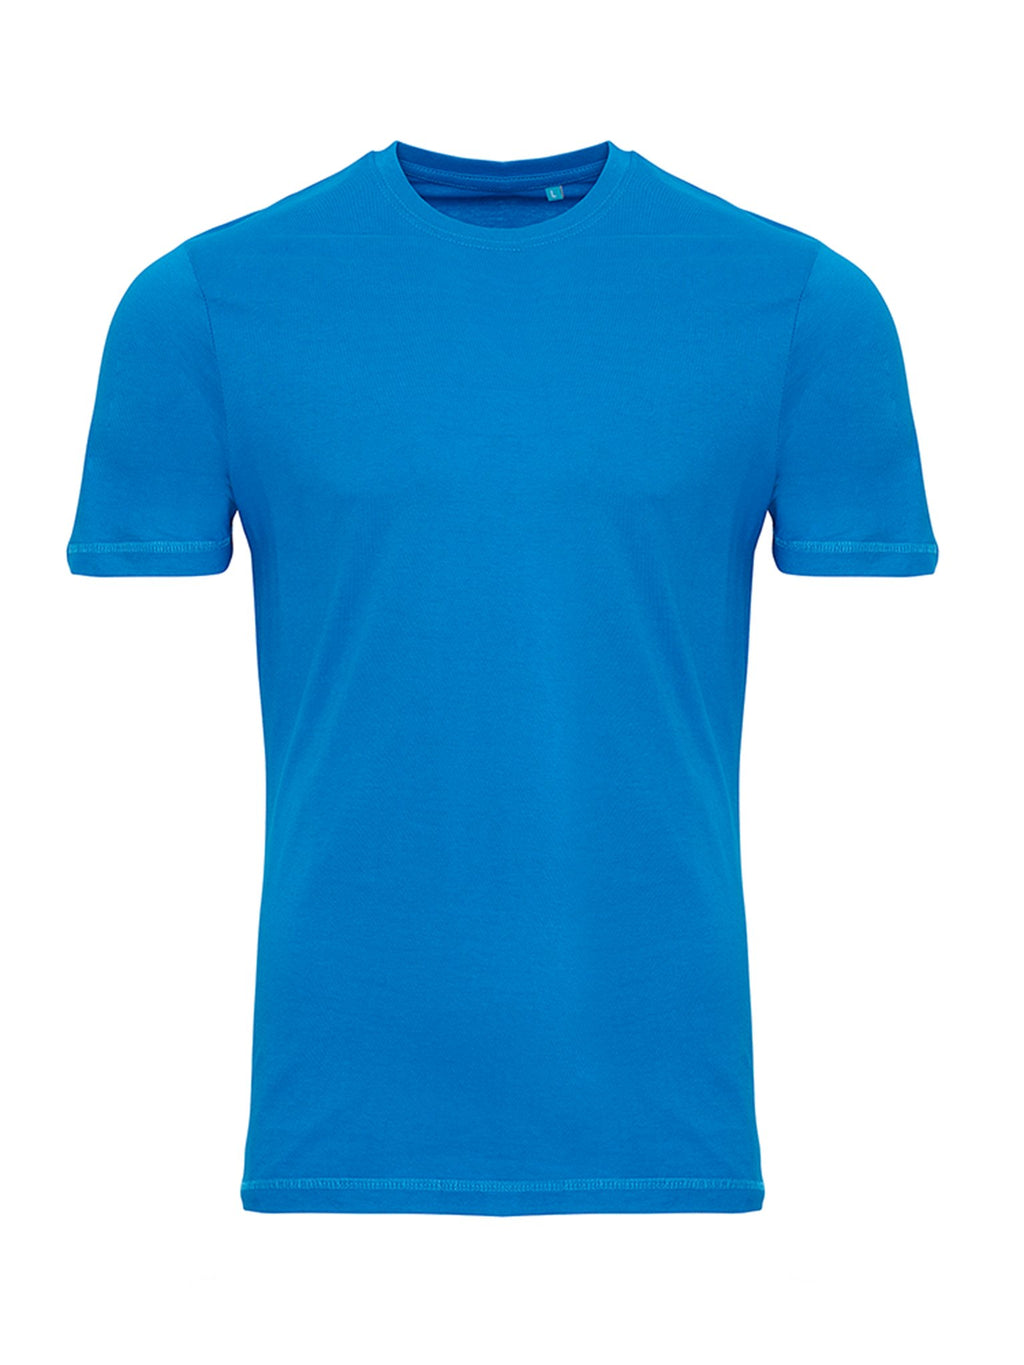 Organska osnovna majica - tirkizno plava